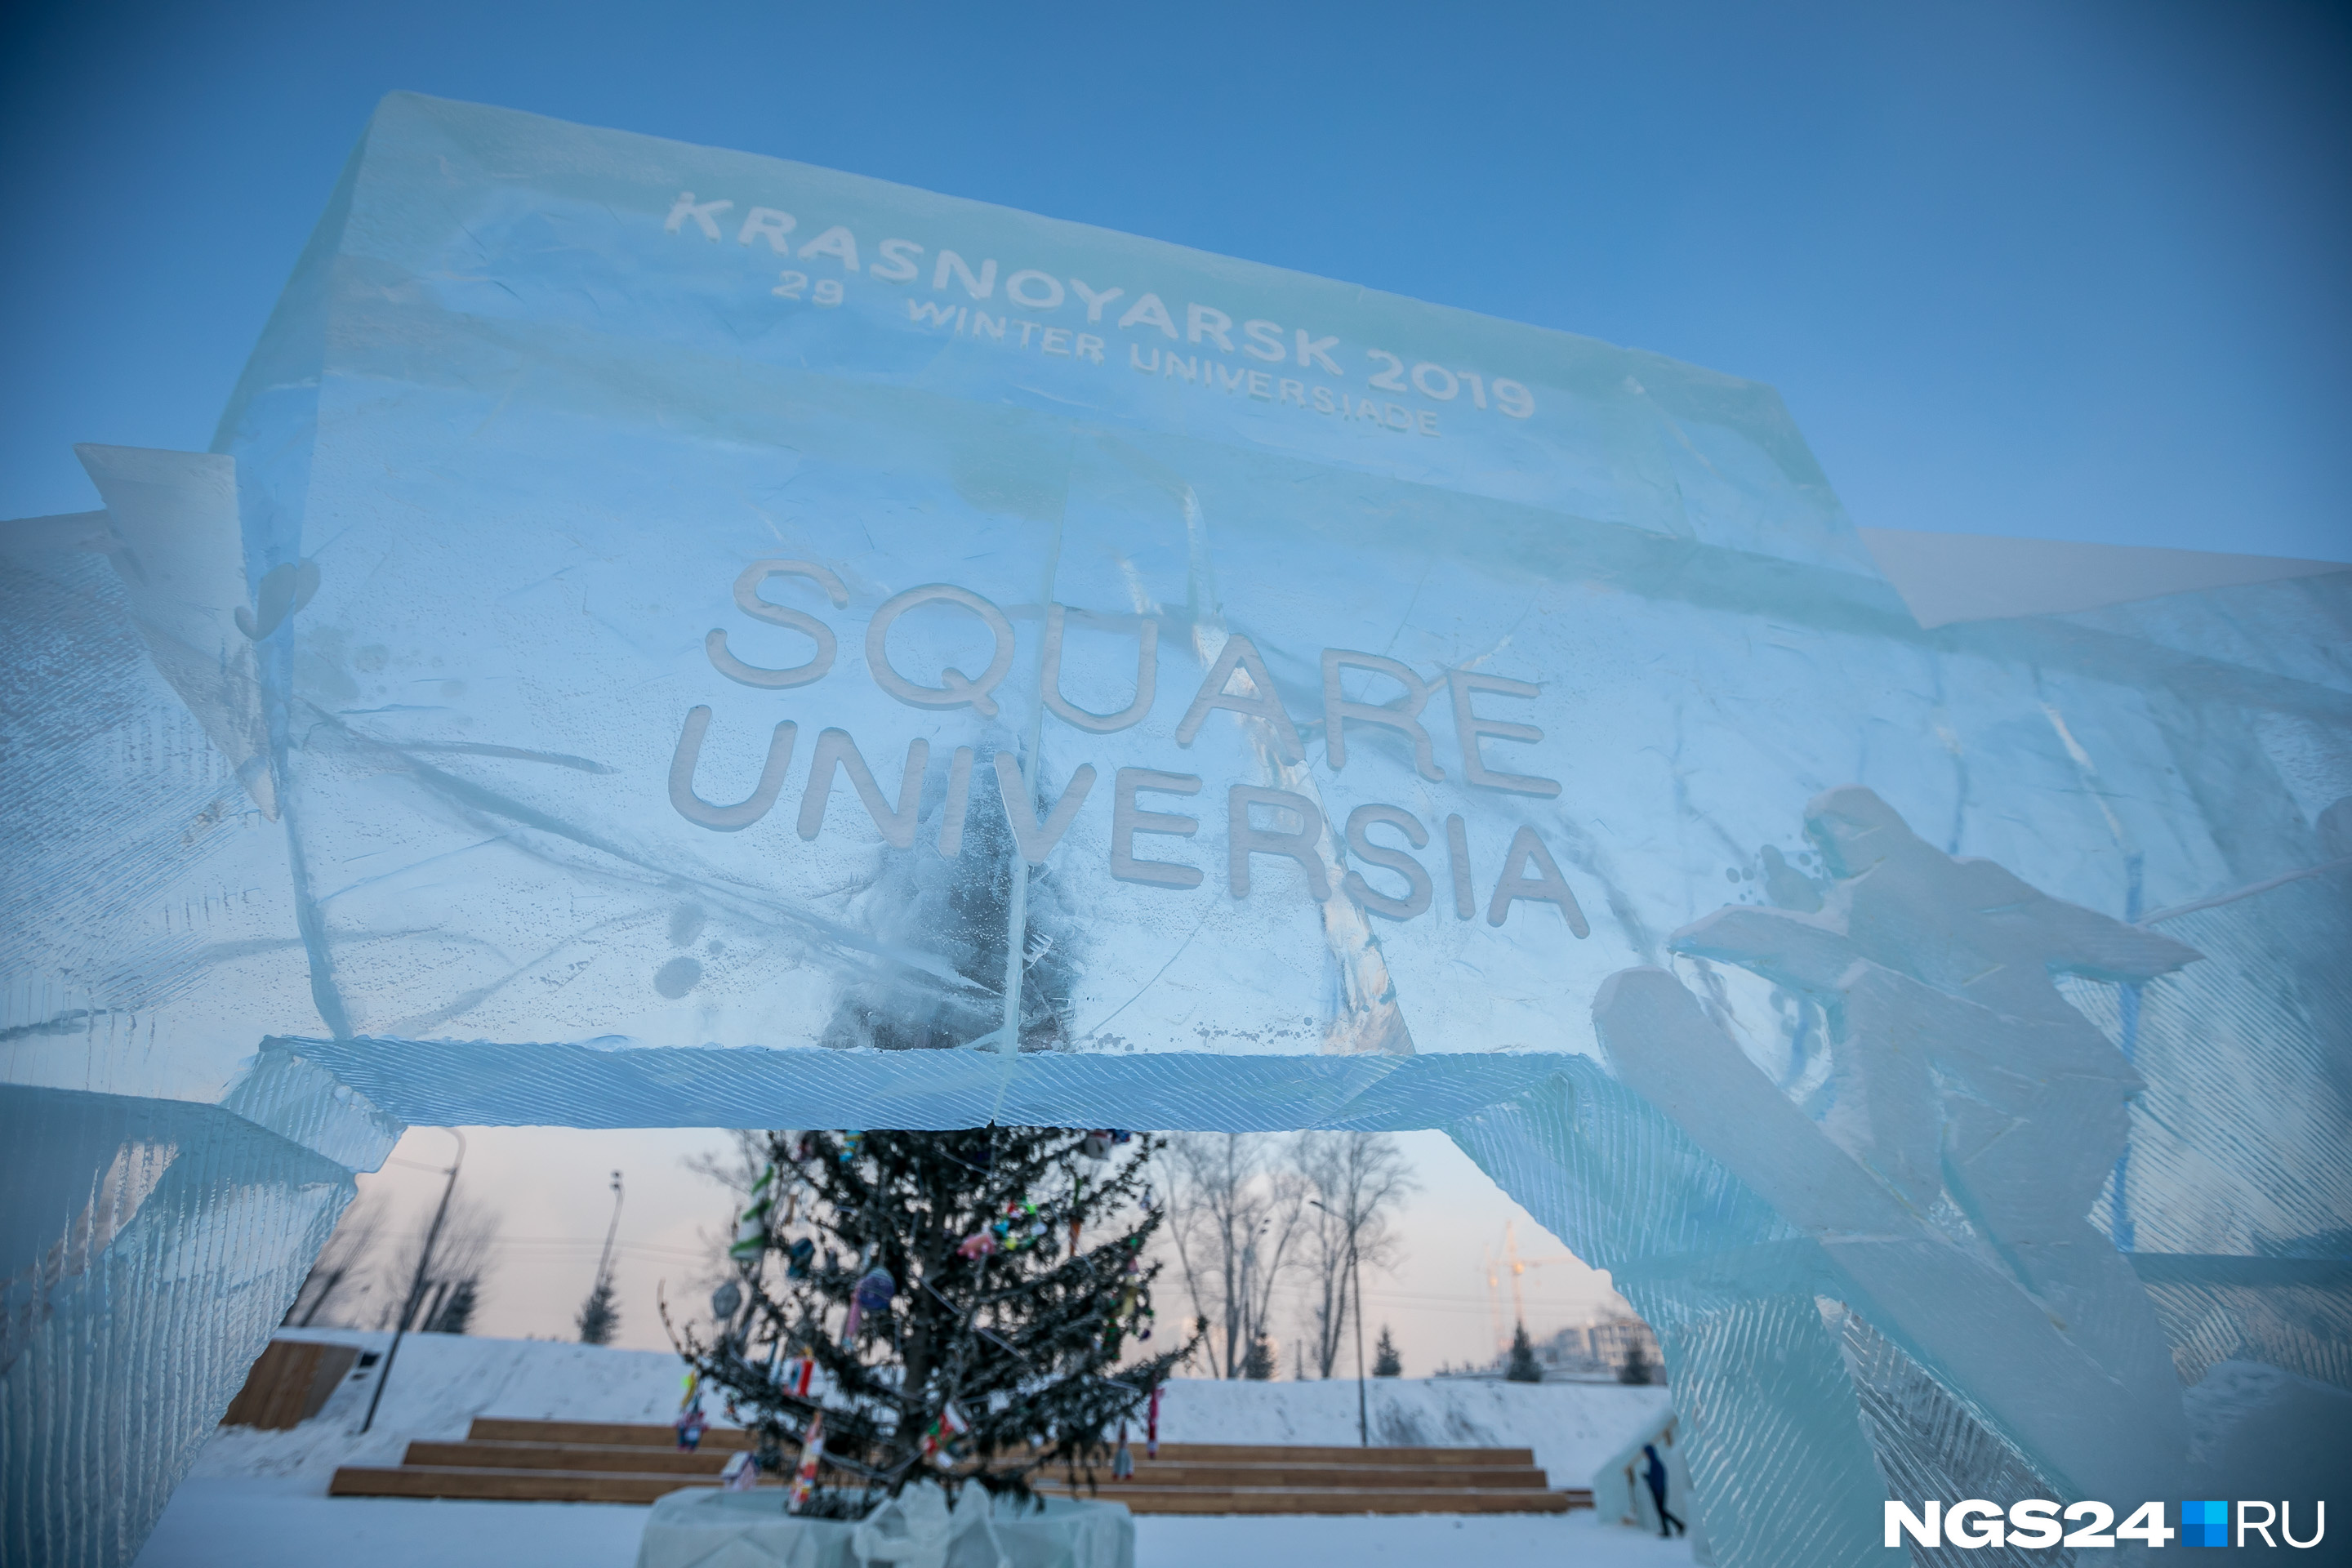 Сквер Универсиады появился в Красноярске только в этом году